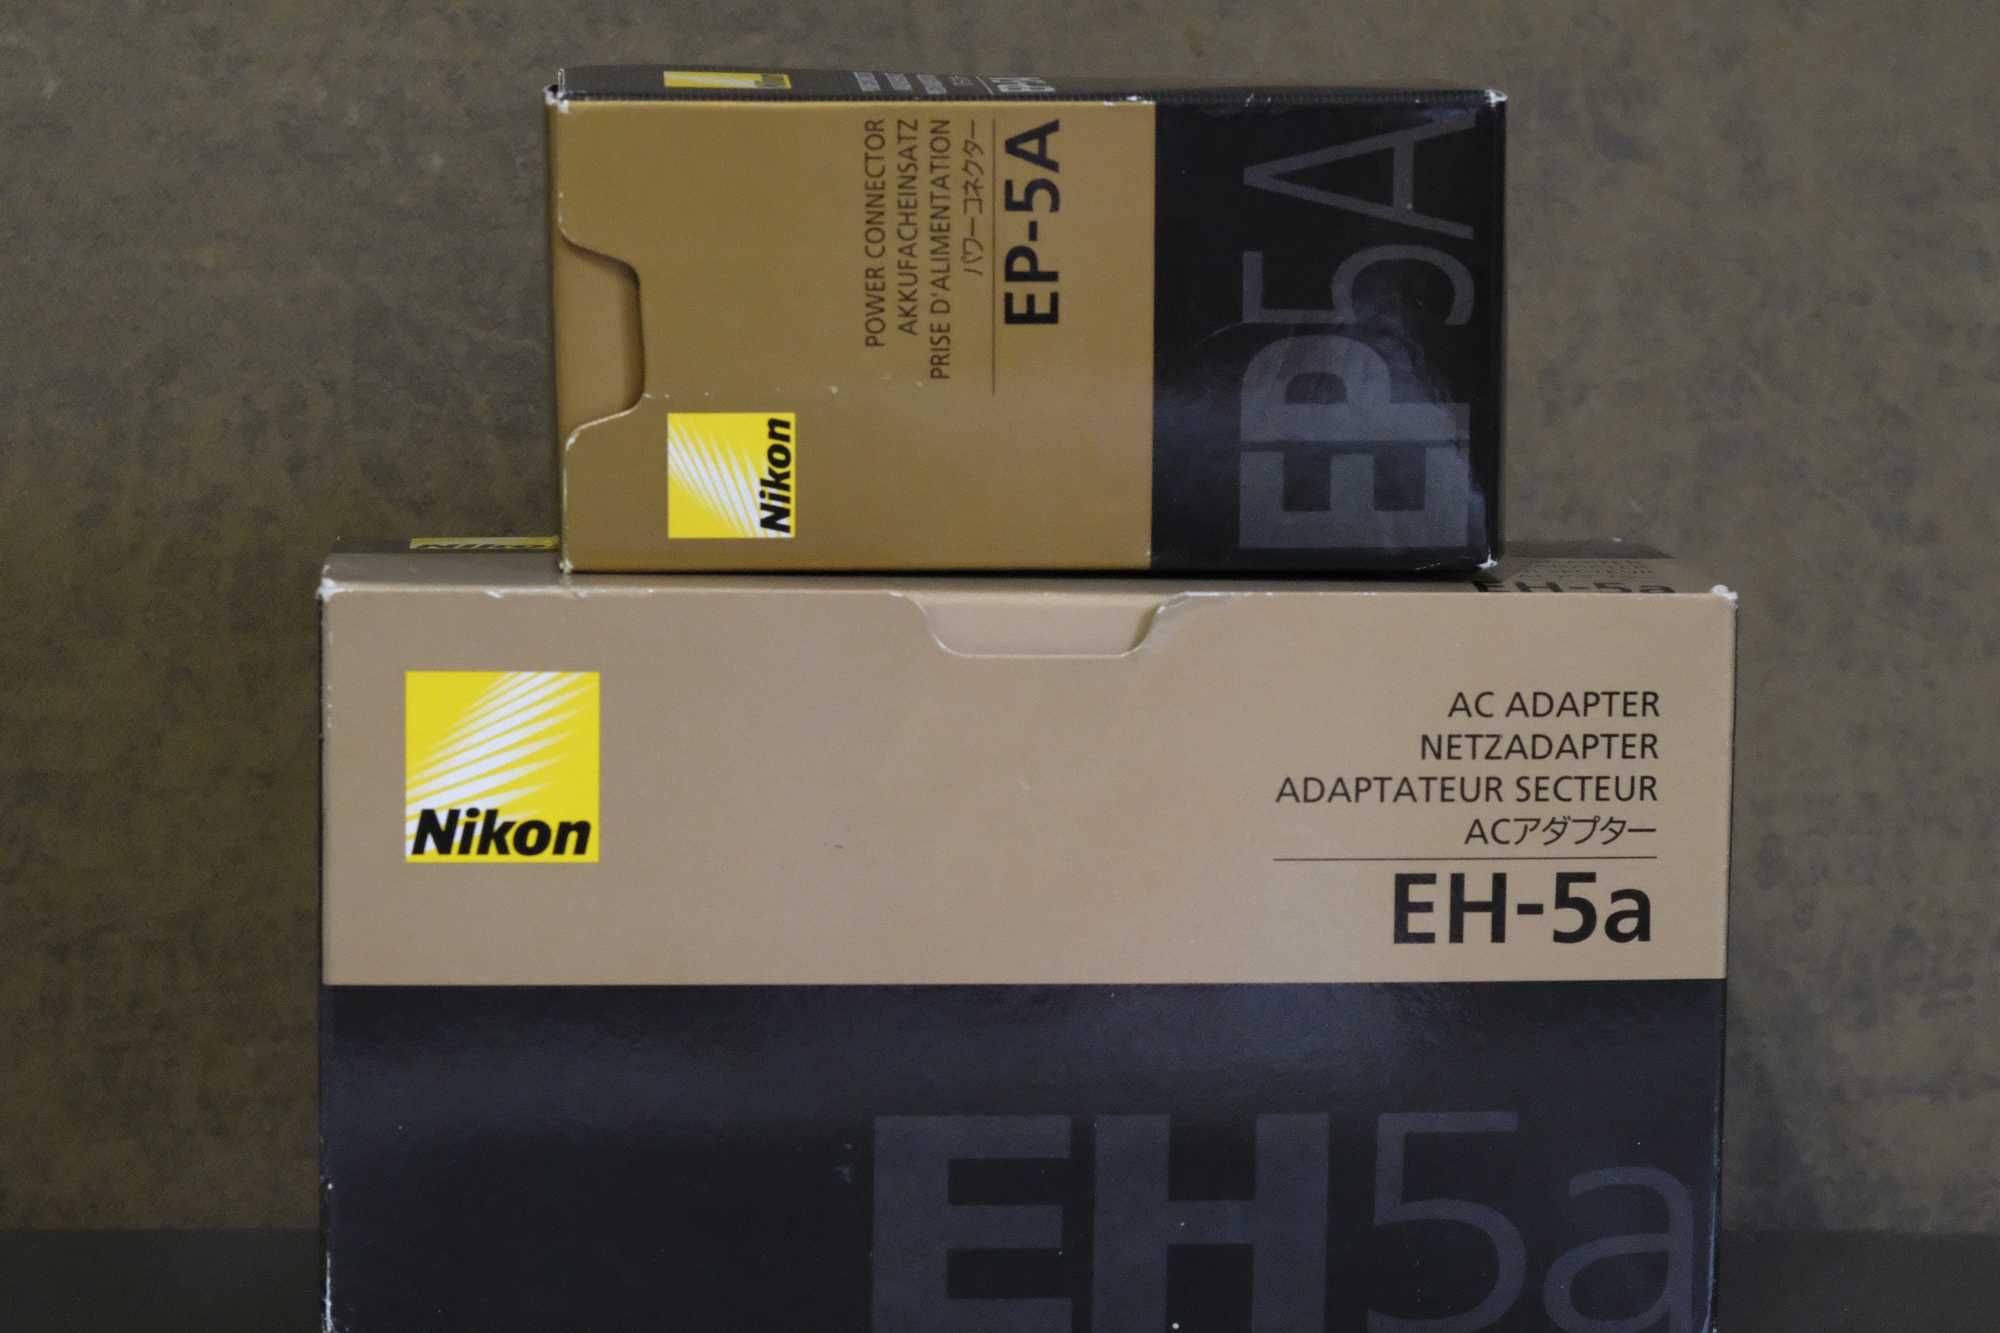 NIKON EP-5A power connector + NIKON EH-5A ac adapter netzadapter